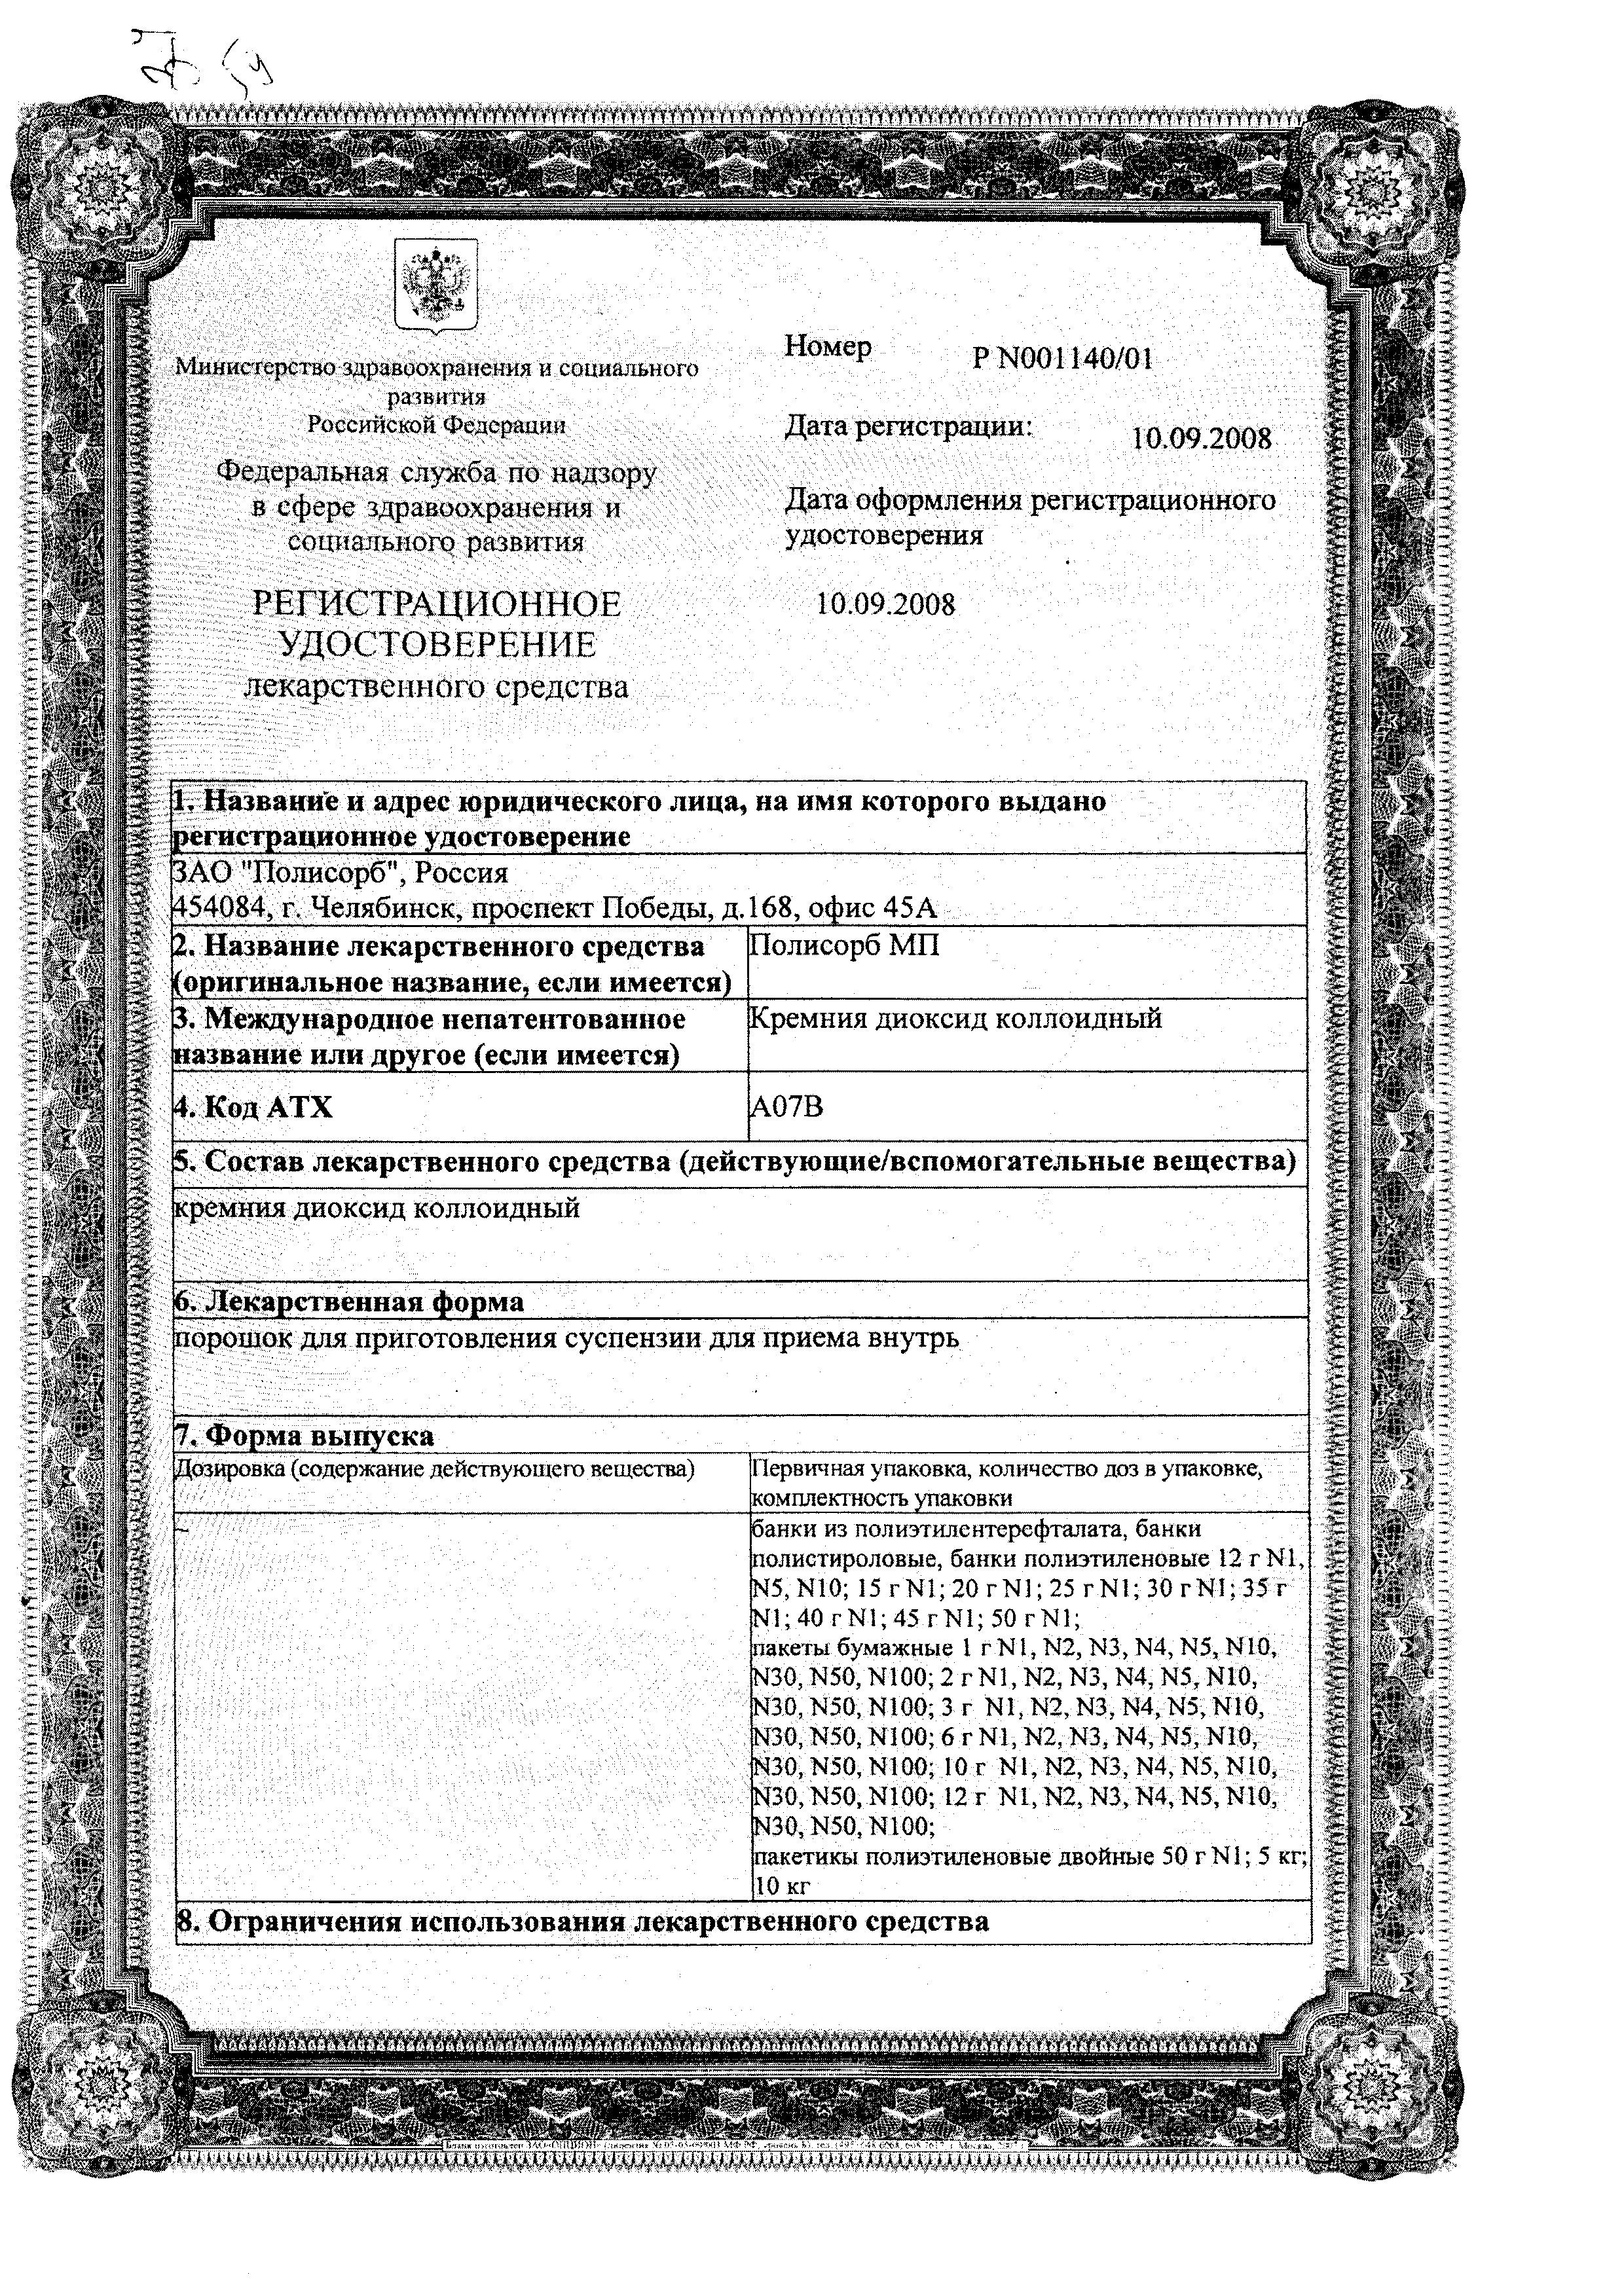 Полисорб МП сертификат